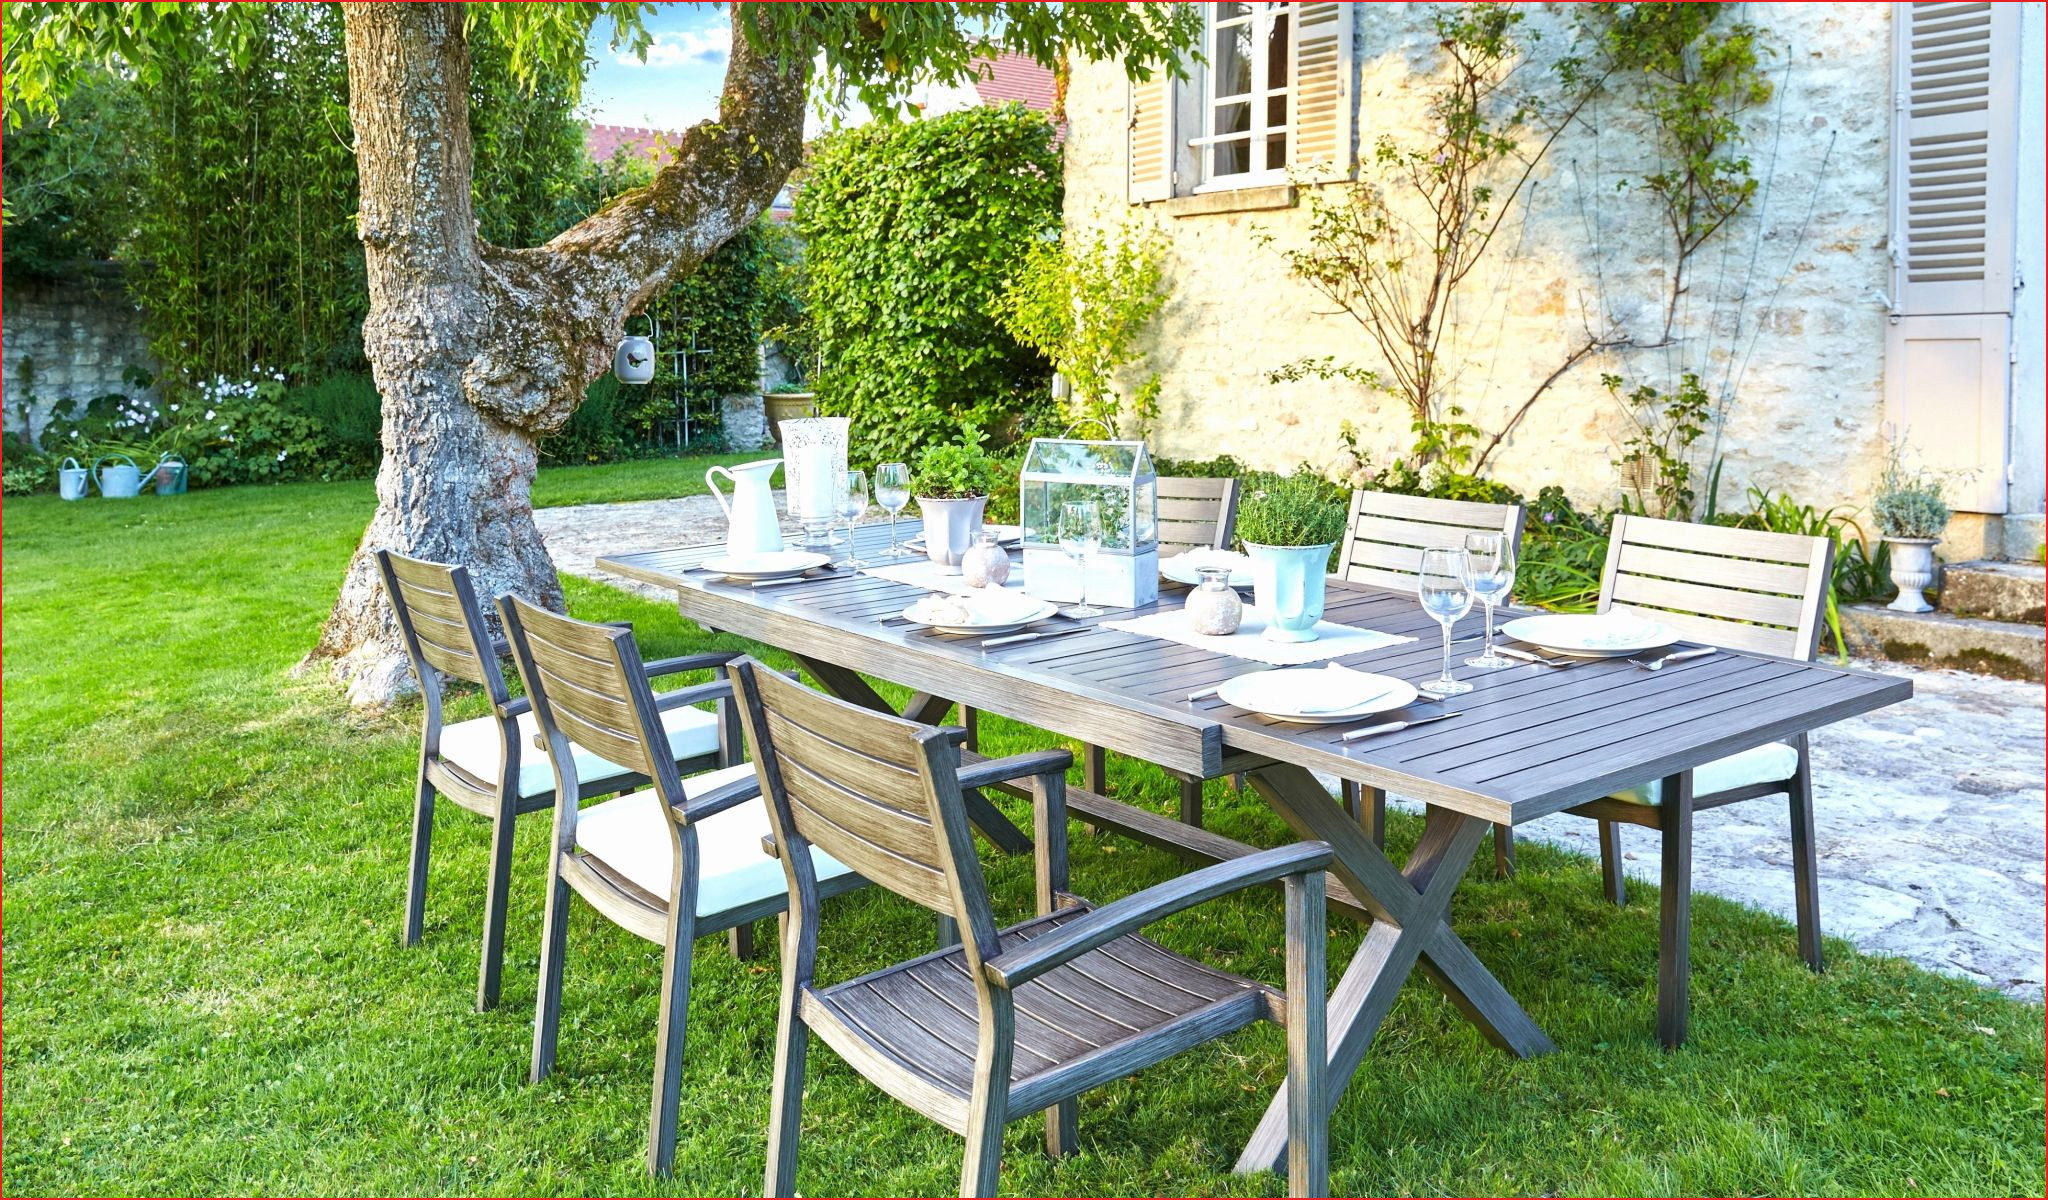 Table Avec Banc Exterieur Best Of Innovante Banc Pour Jardin Image De Jardin Décoratif